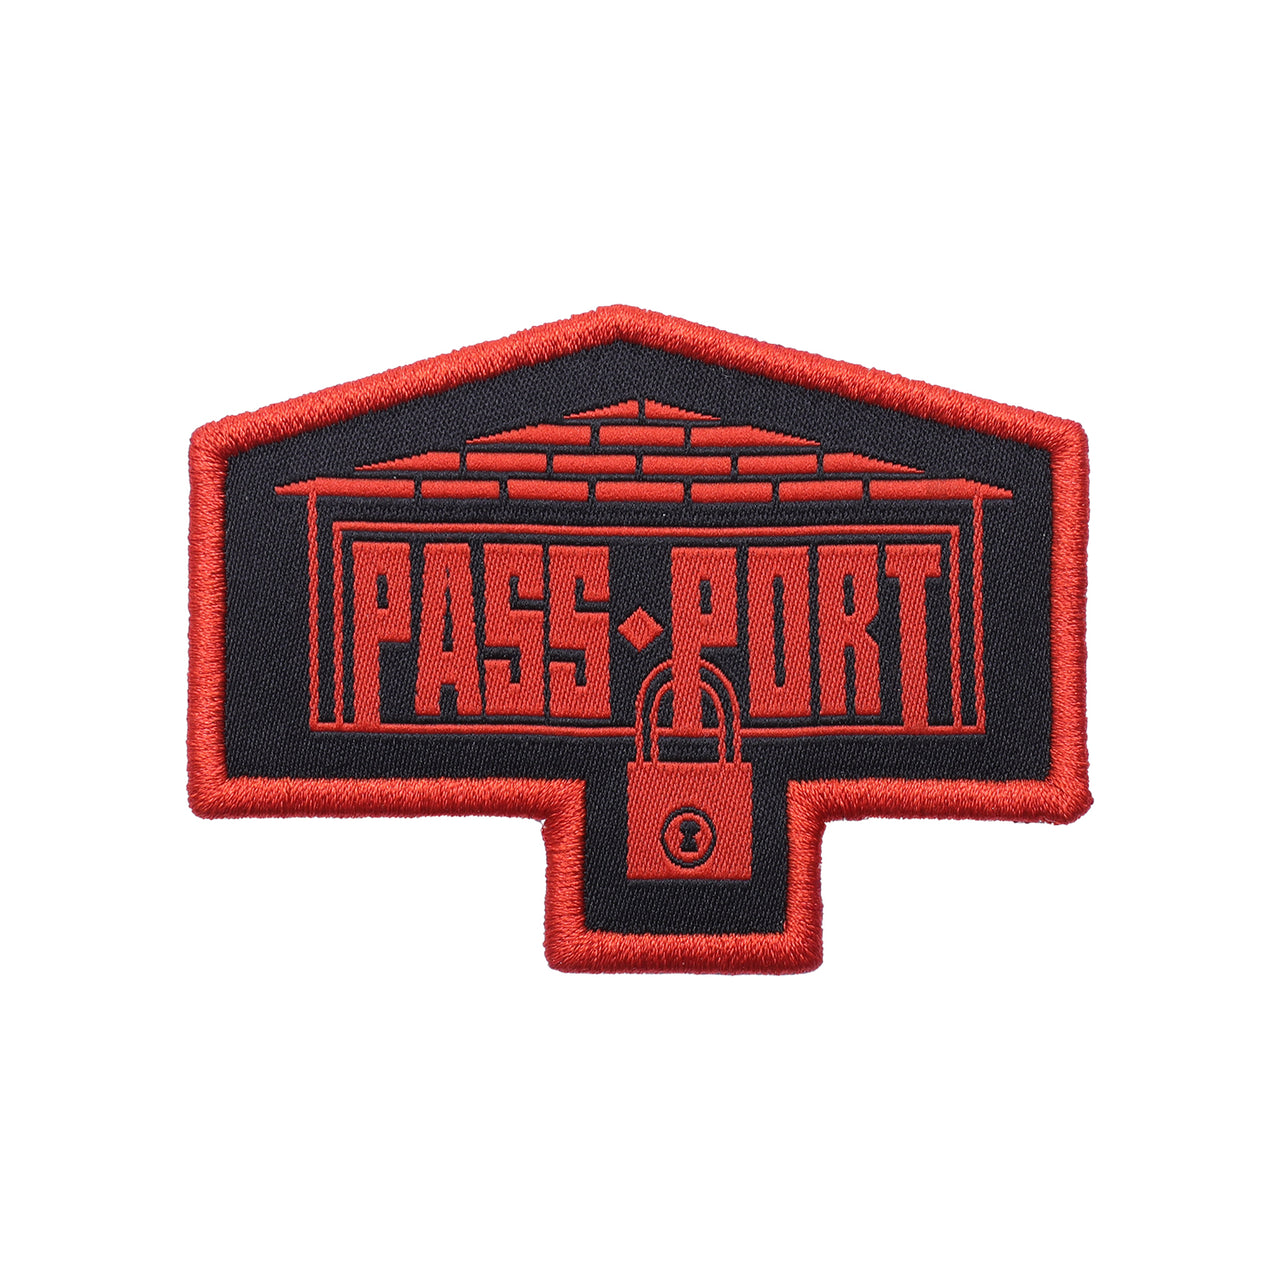 PASS~PORT - DEPOT PATCH